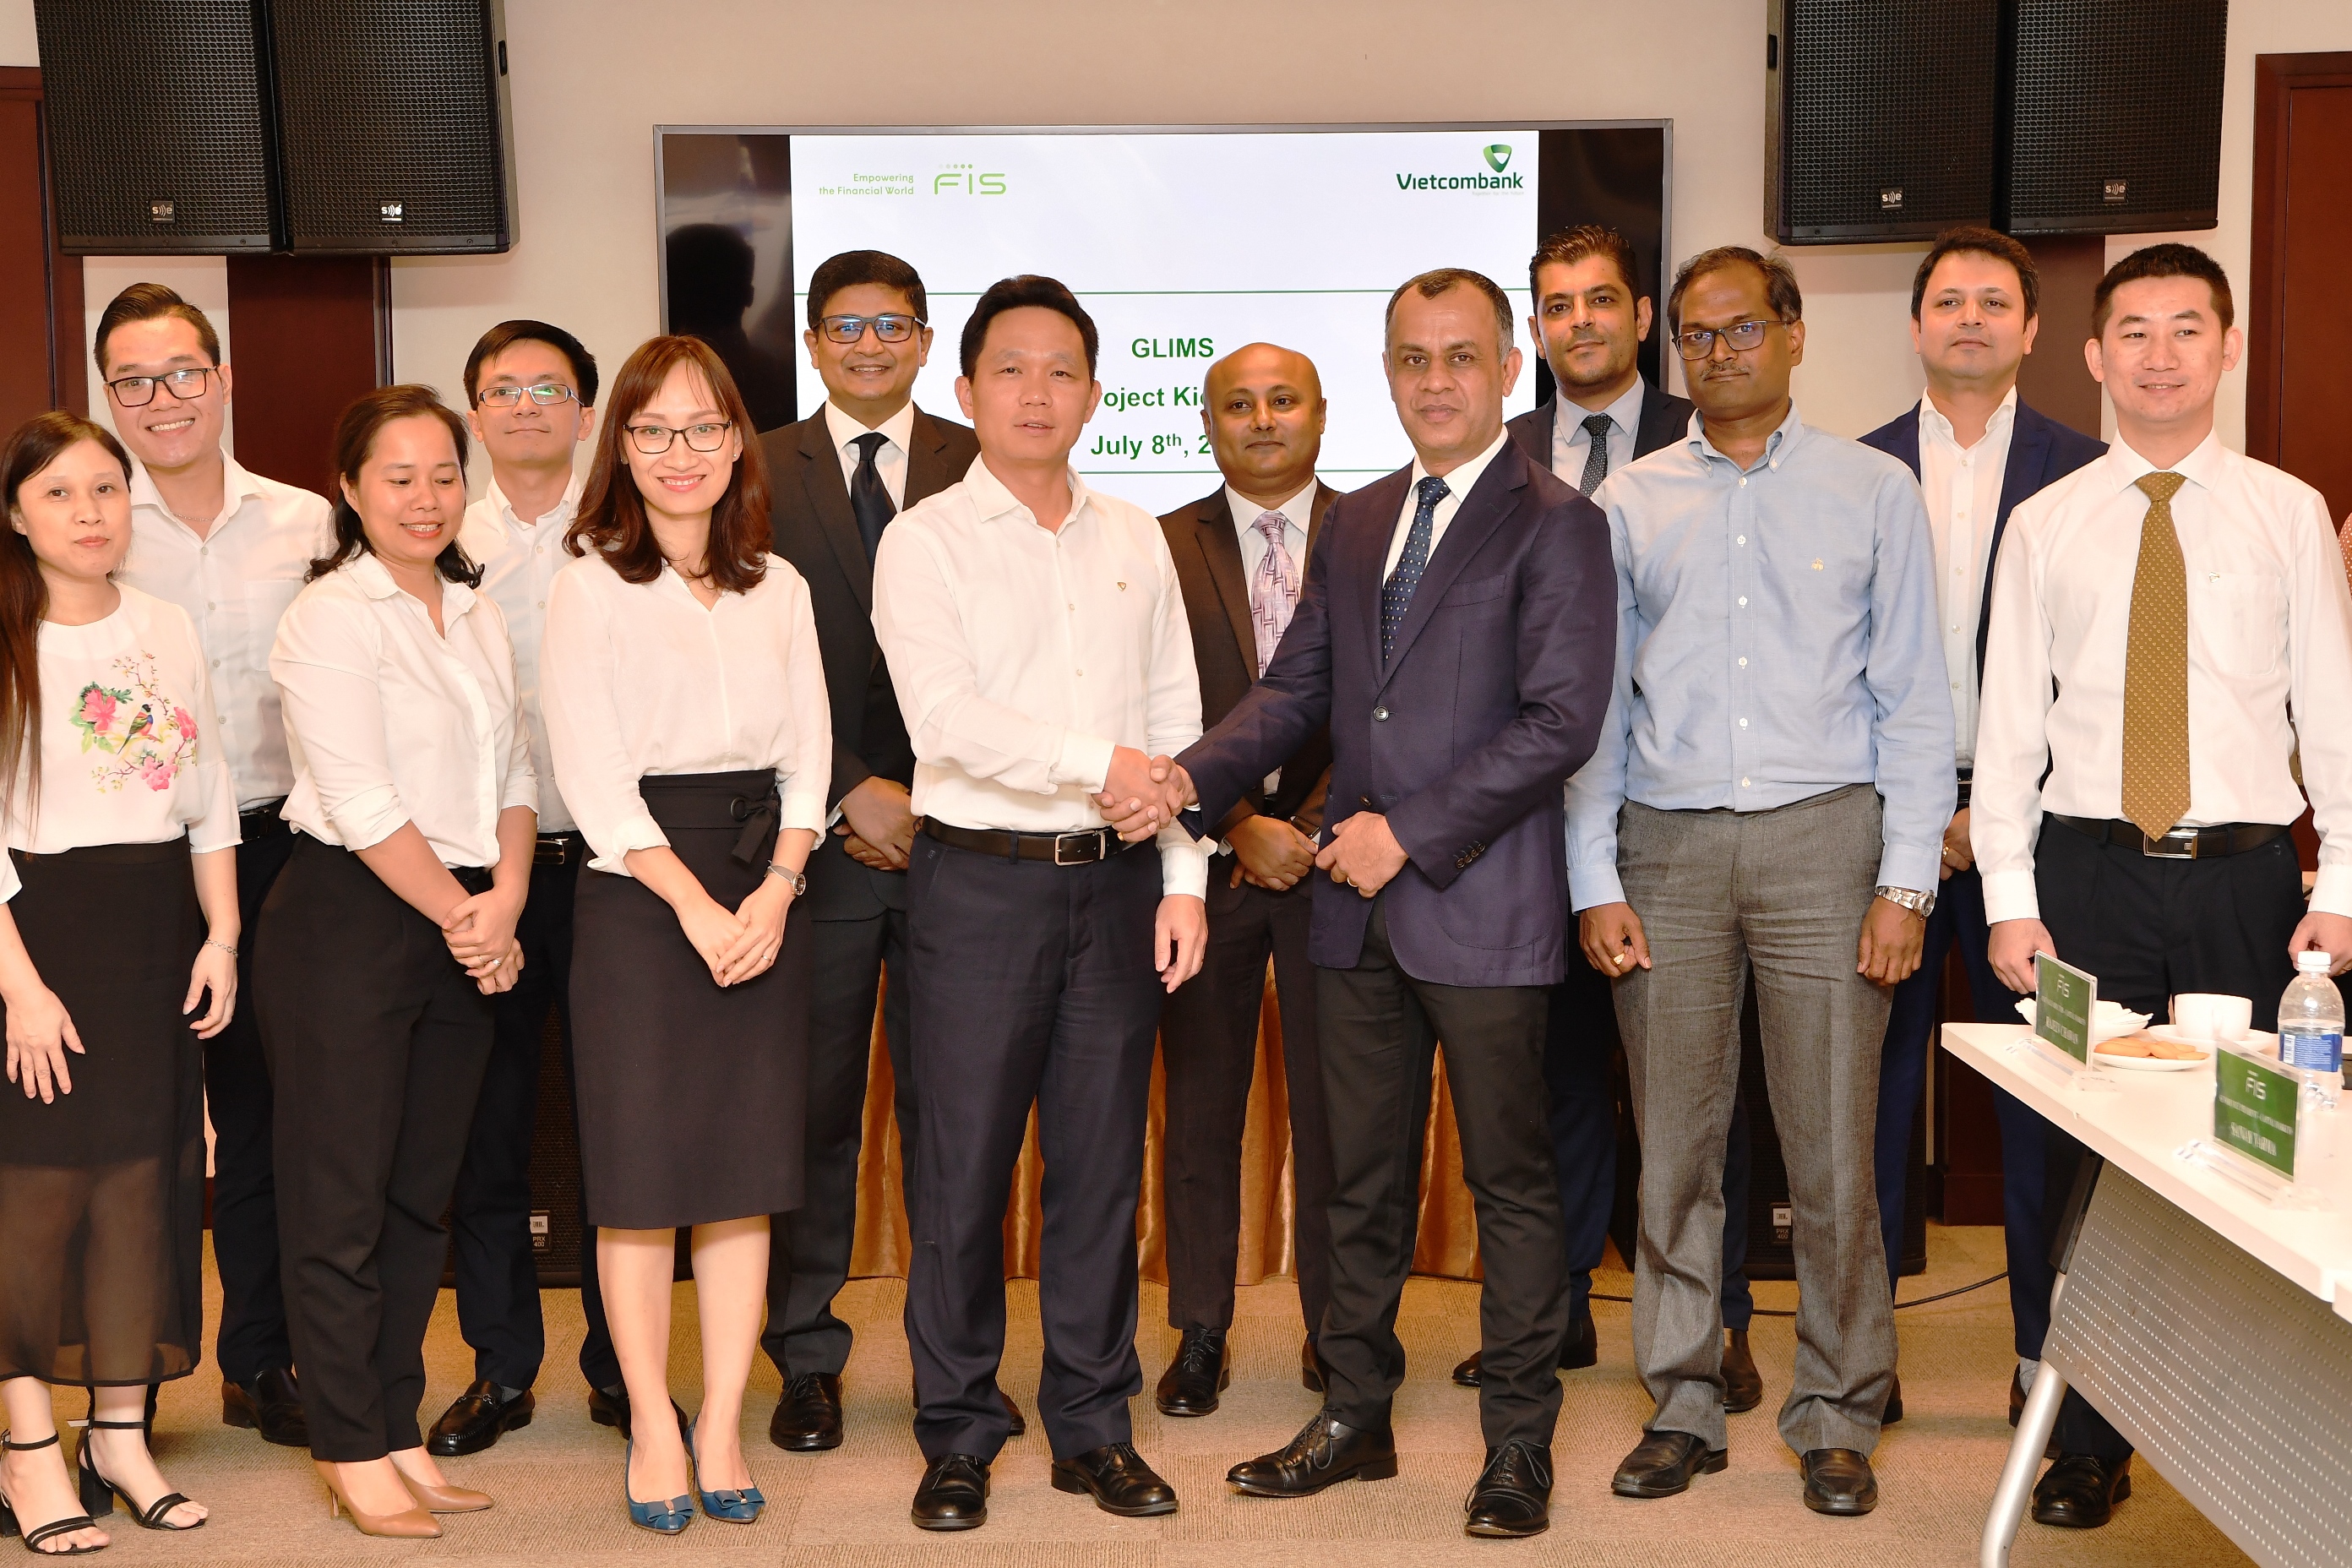 Vietcombank tổ chức Lễ khởi động Dự án “Đầu tư hệ thống quản lý hạn mức rủi ro” (GLIMS)